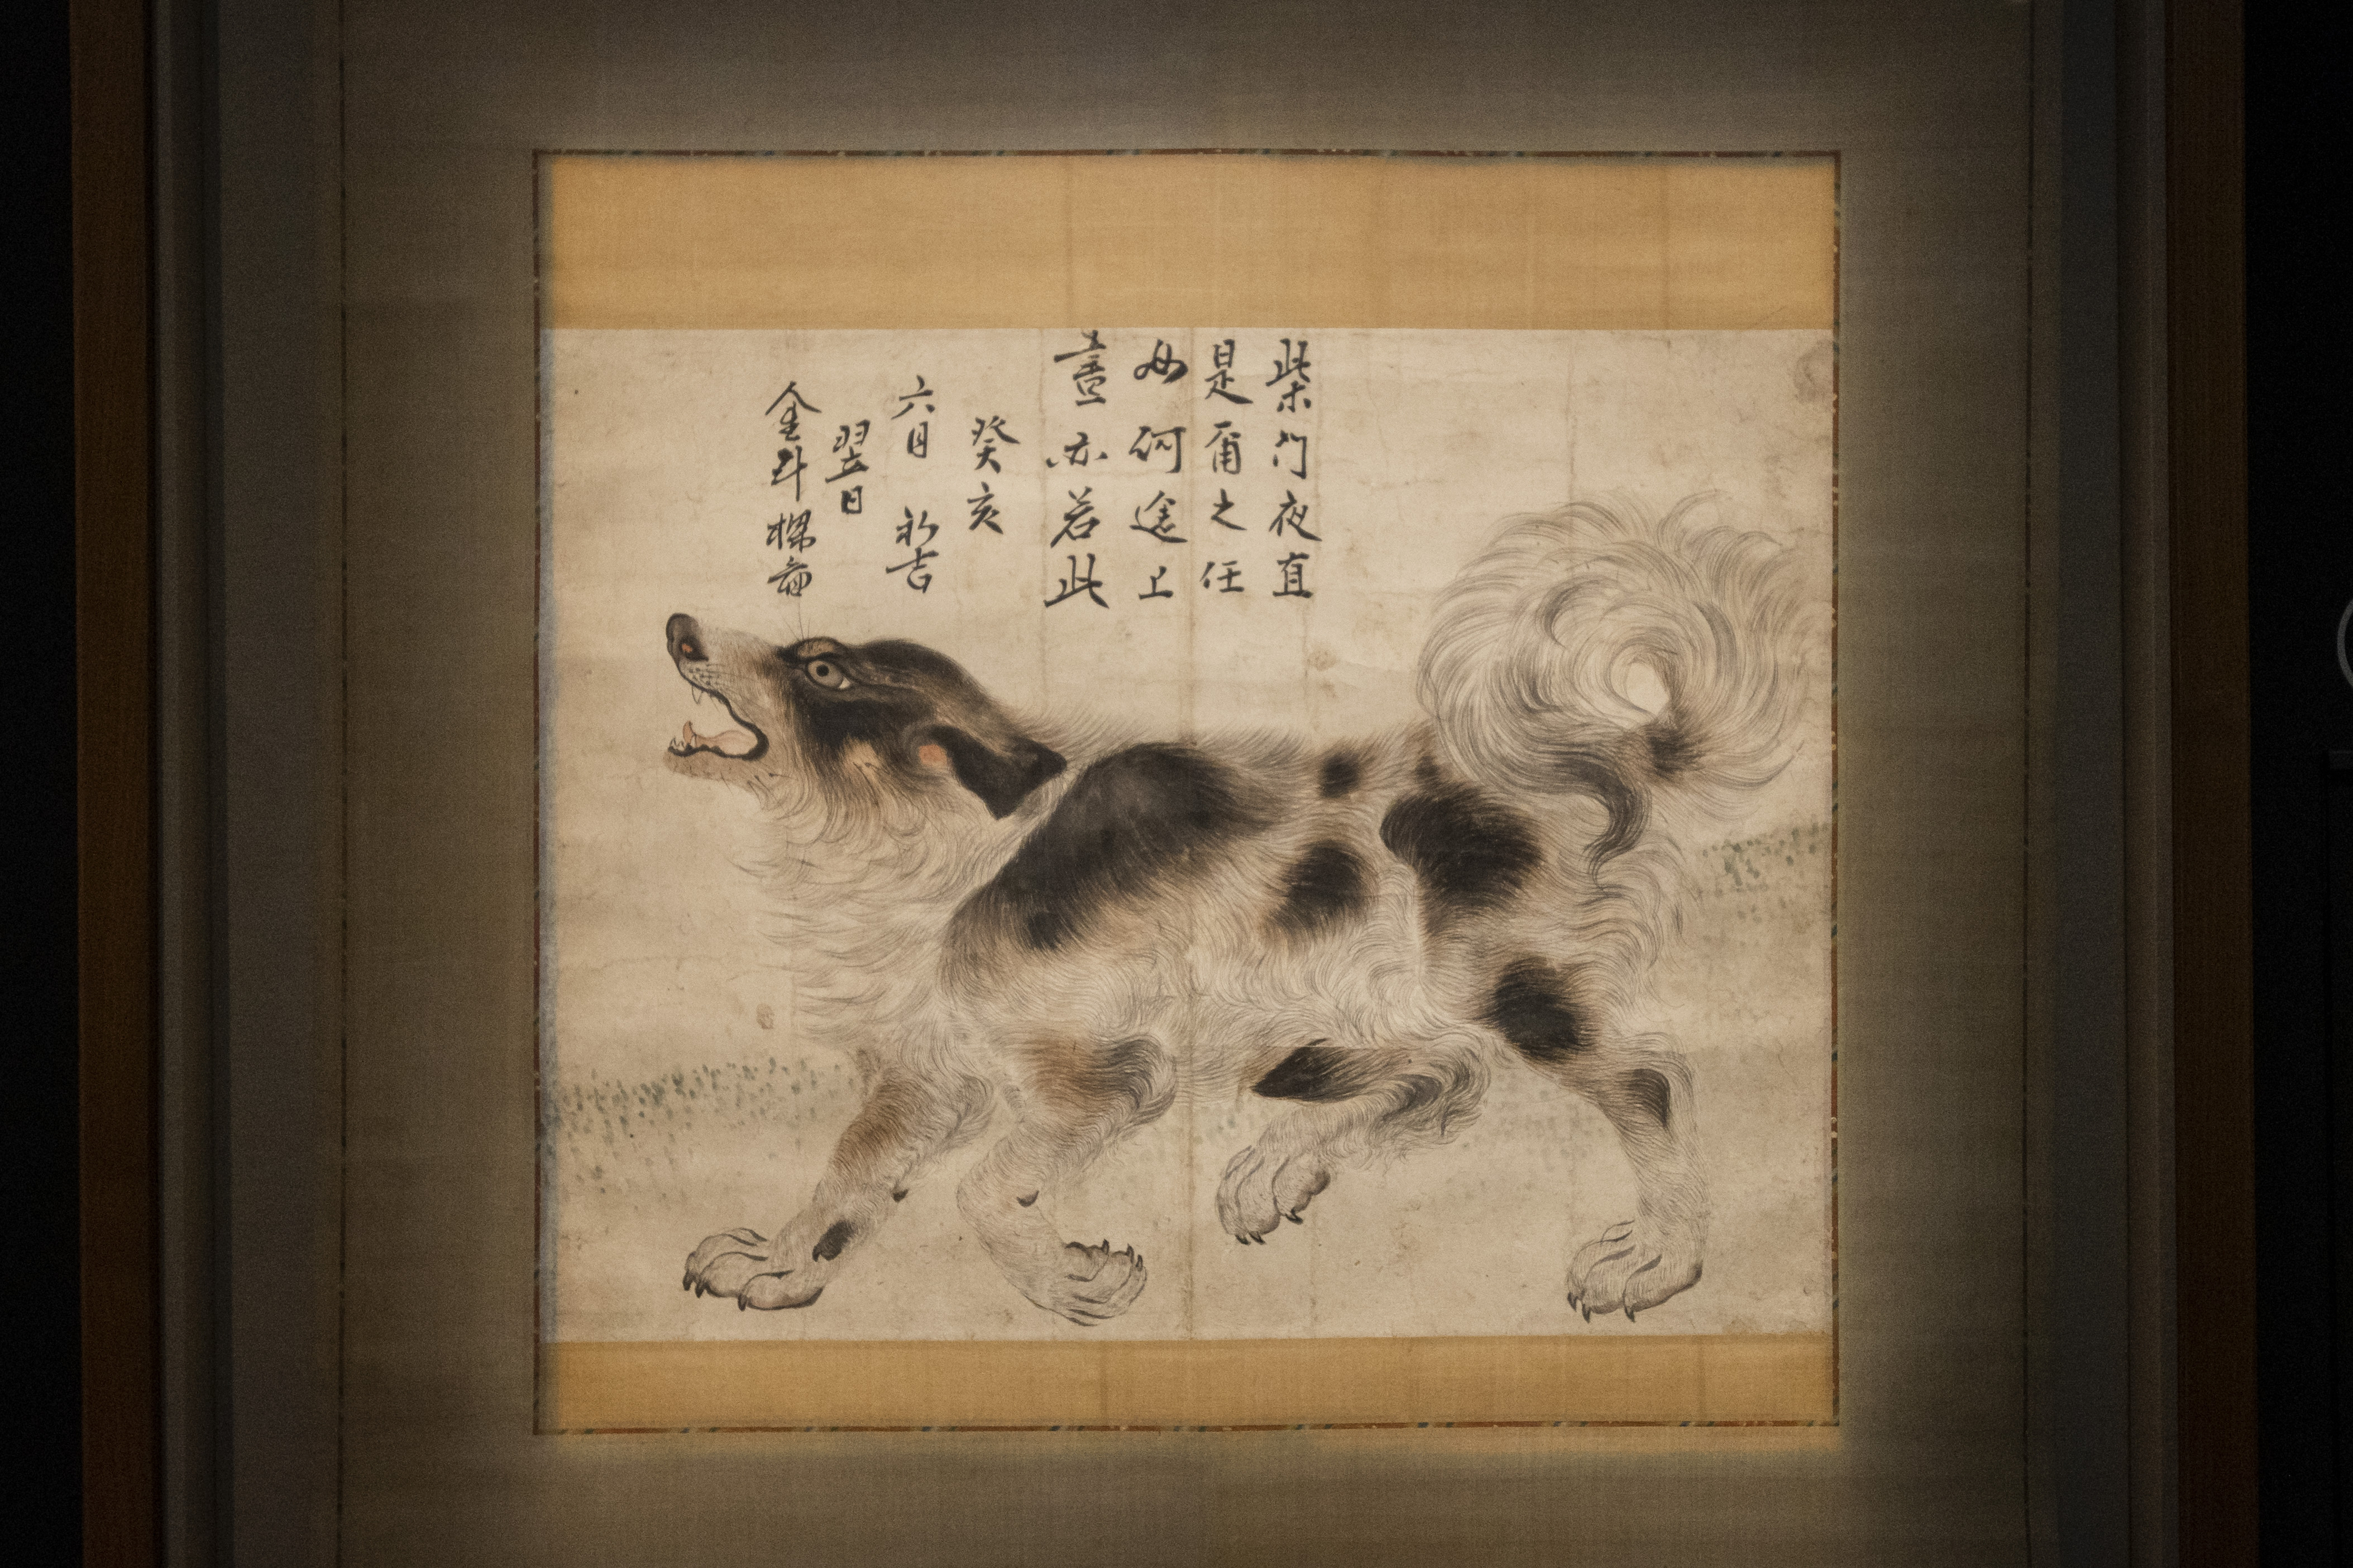 김두량(1696~1763)이 1743년 그린 삽살개(尨狗圖). 상단의 글은 영조가 직접 짓고 썼다. 류재민 기자